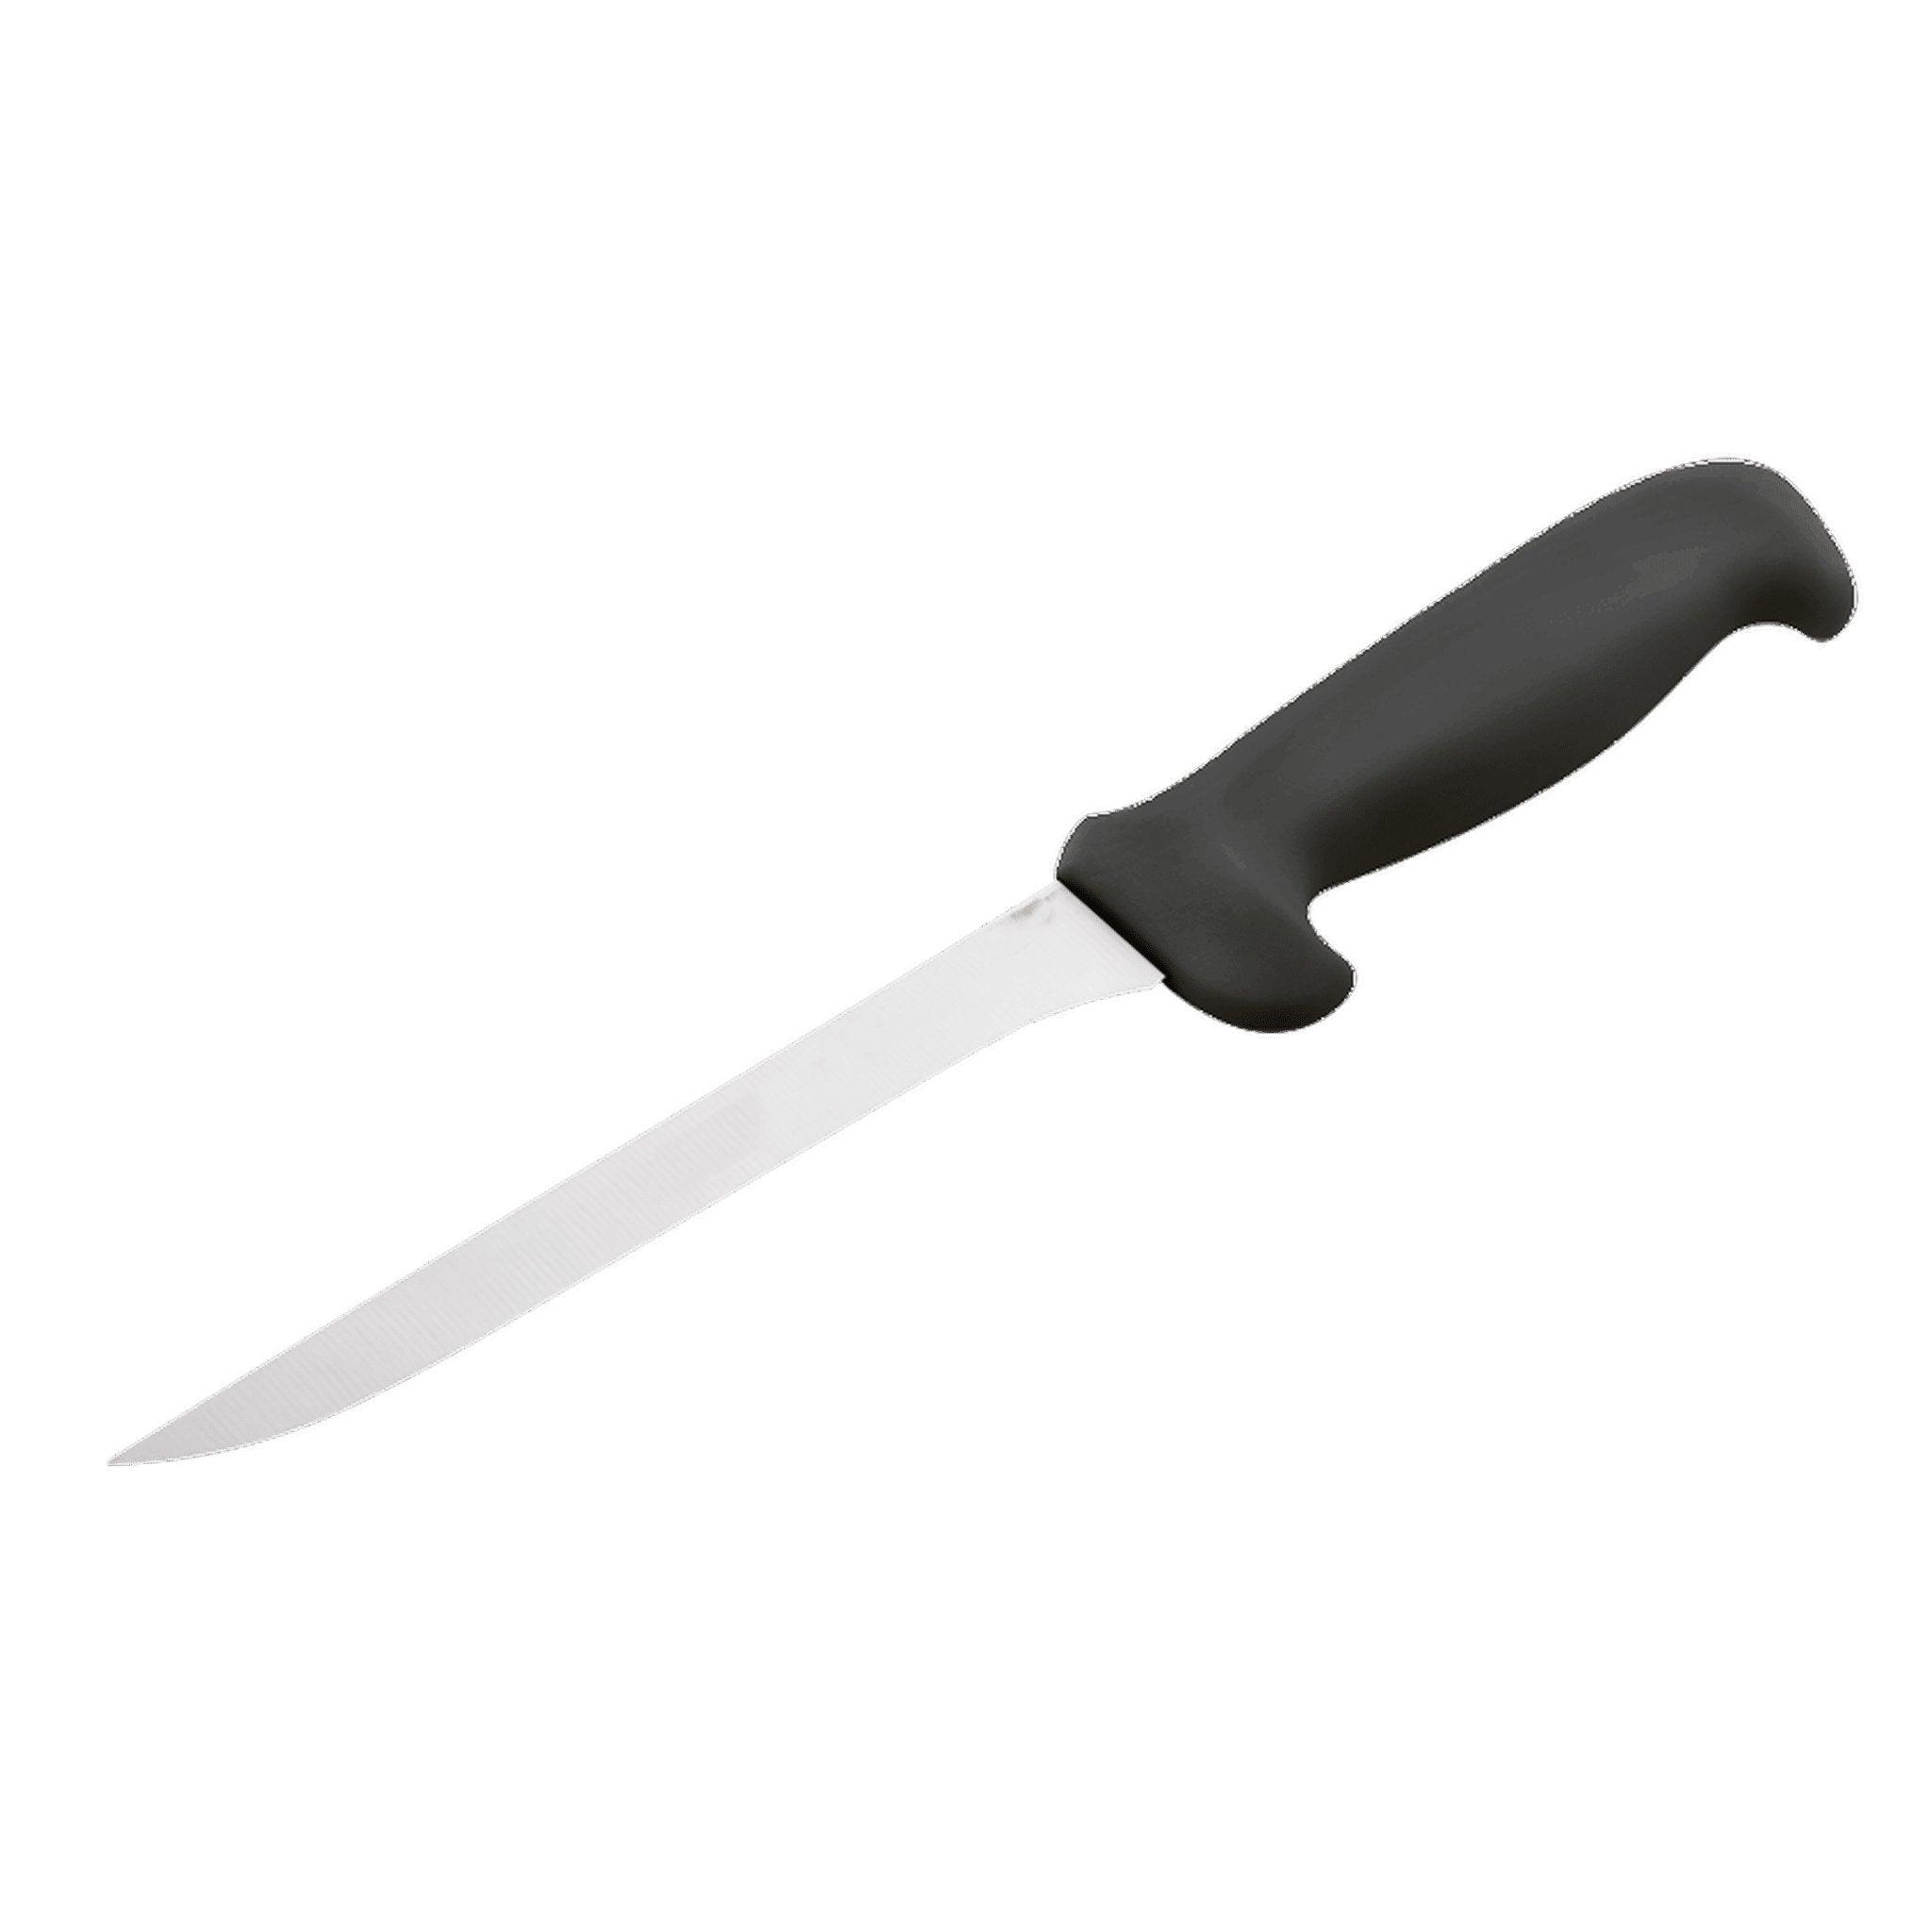 Fillet Knife (Narrow Flexible) - Matuska Taxidermy Supply Company